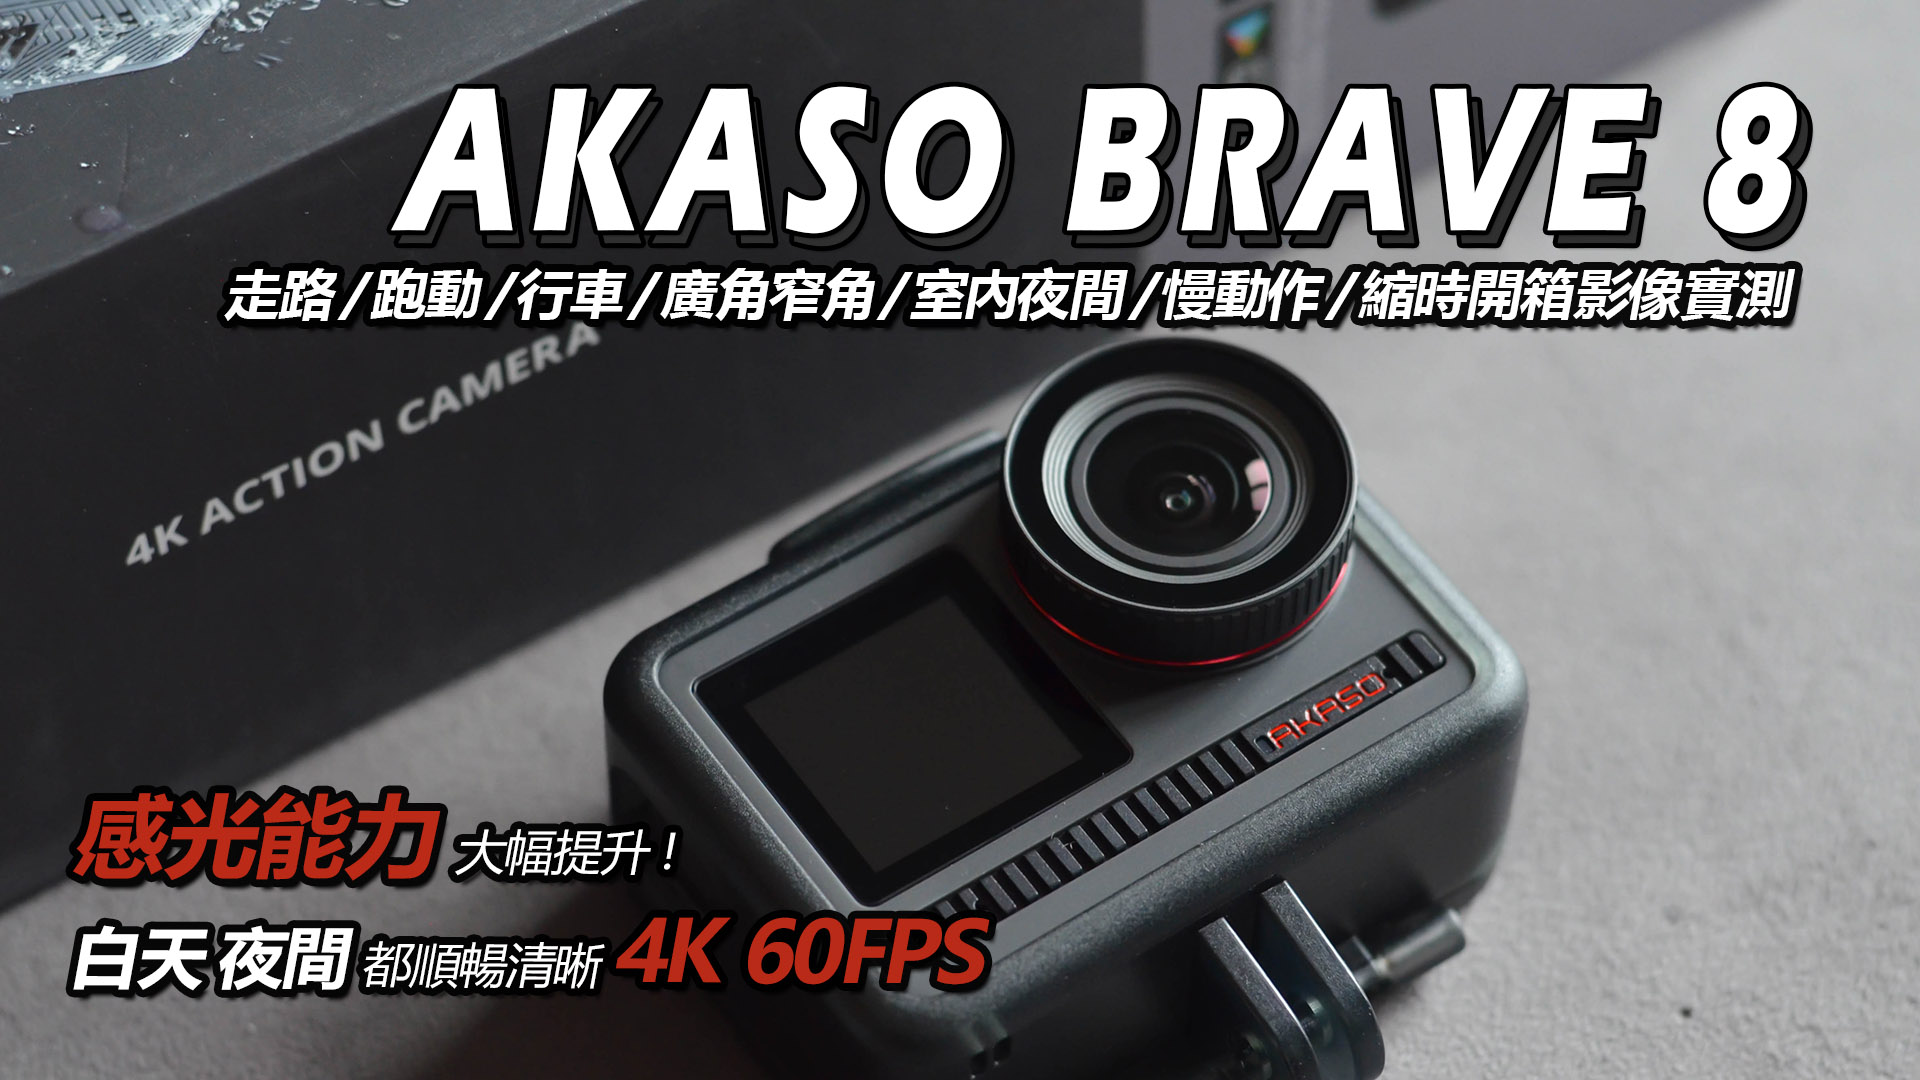 開箱】AKASO BRAVE 8實測: 感光能力優秀的4K 60fps運動攝影機! 走跑